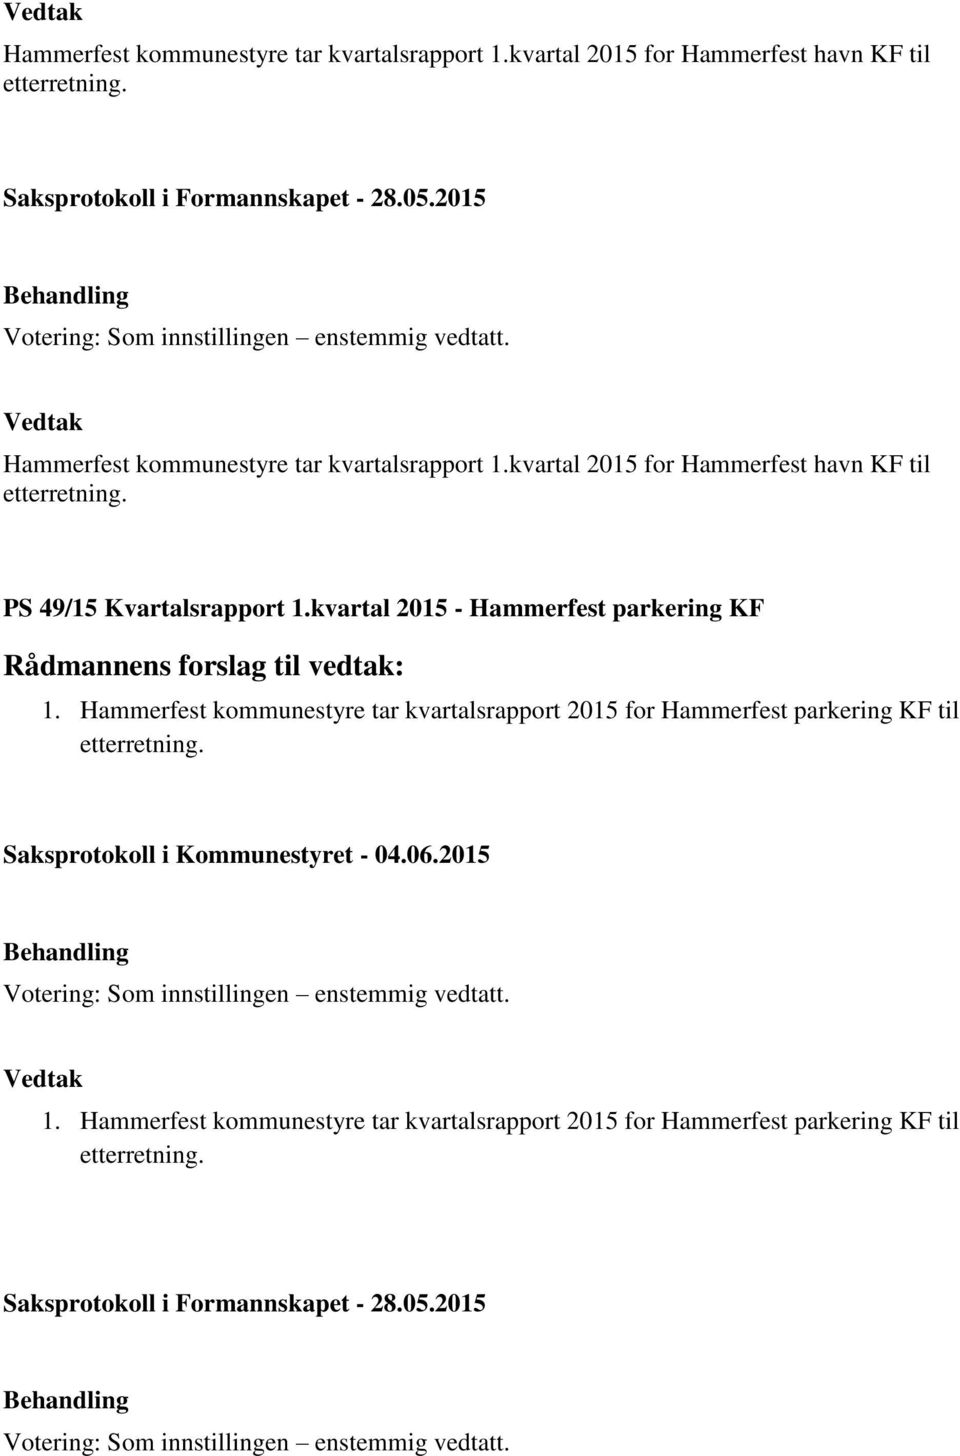 Hammerfest kommunestyre tar kvartalsrapport 2015 for Hammerfest parkering KF til etterretning. 1.